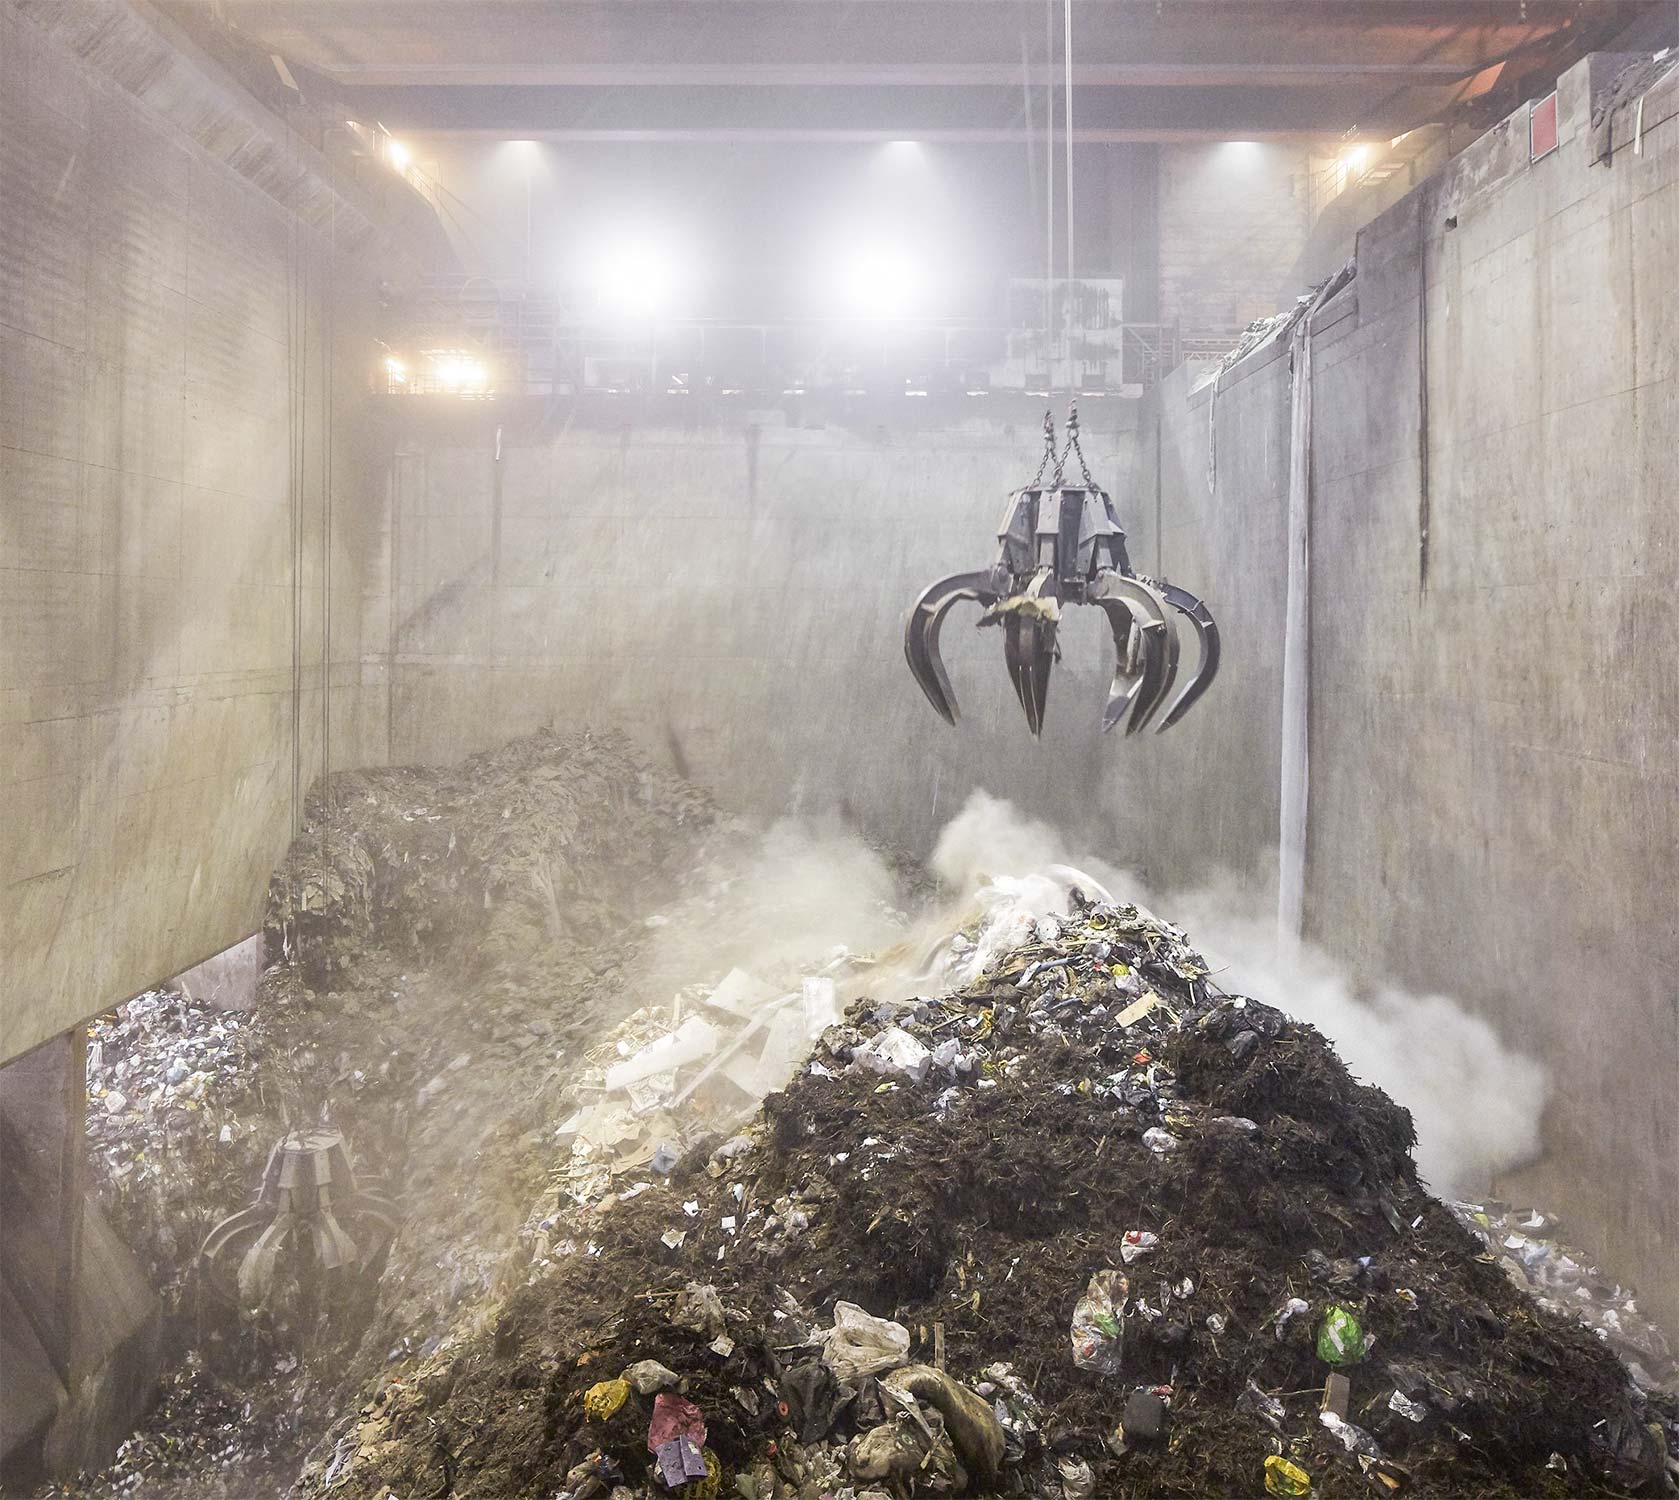 Med den nye aftale vil ARC få lov til at importere mere affald. Foto: Hufton&Crow/ARC.